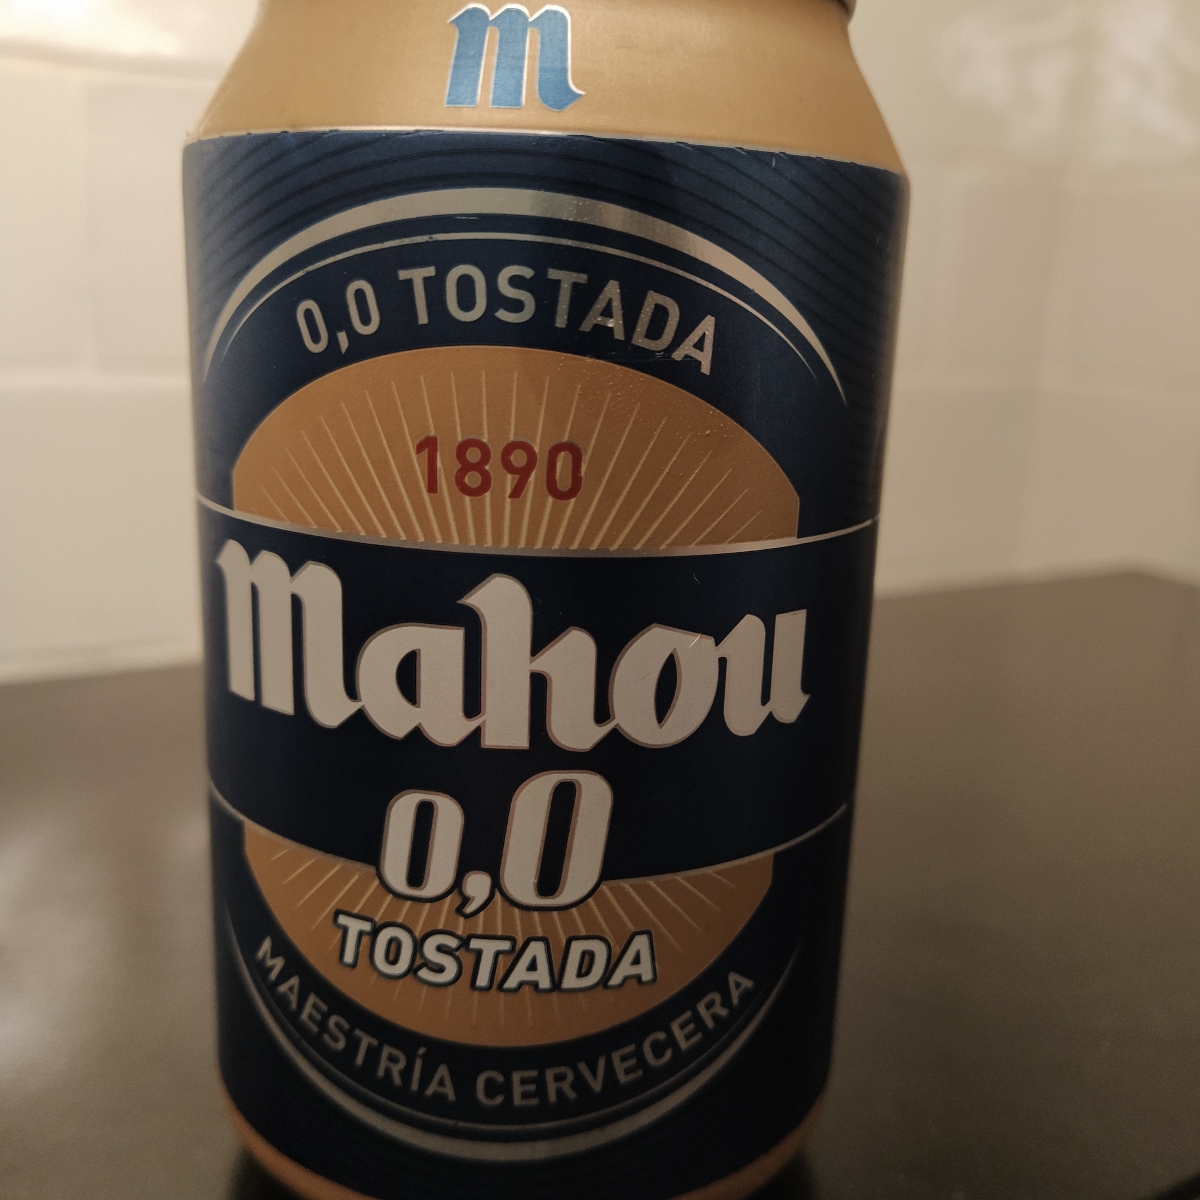 MAHOU 0,0 TOSTADA